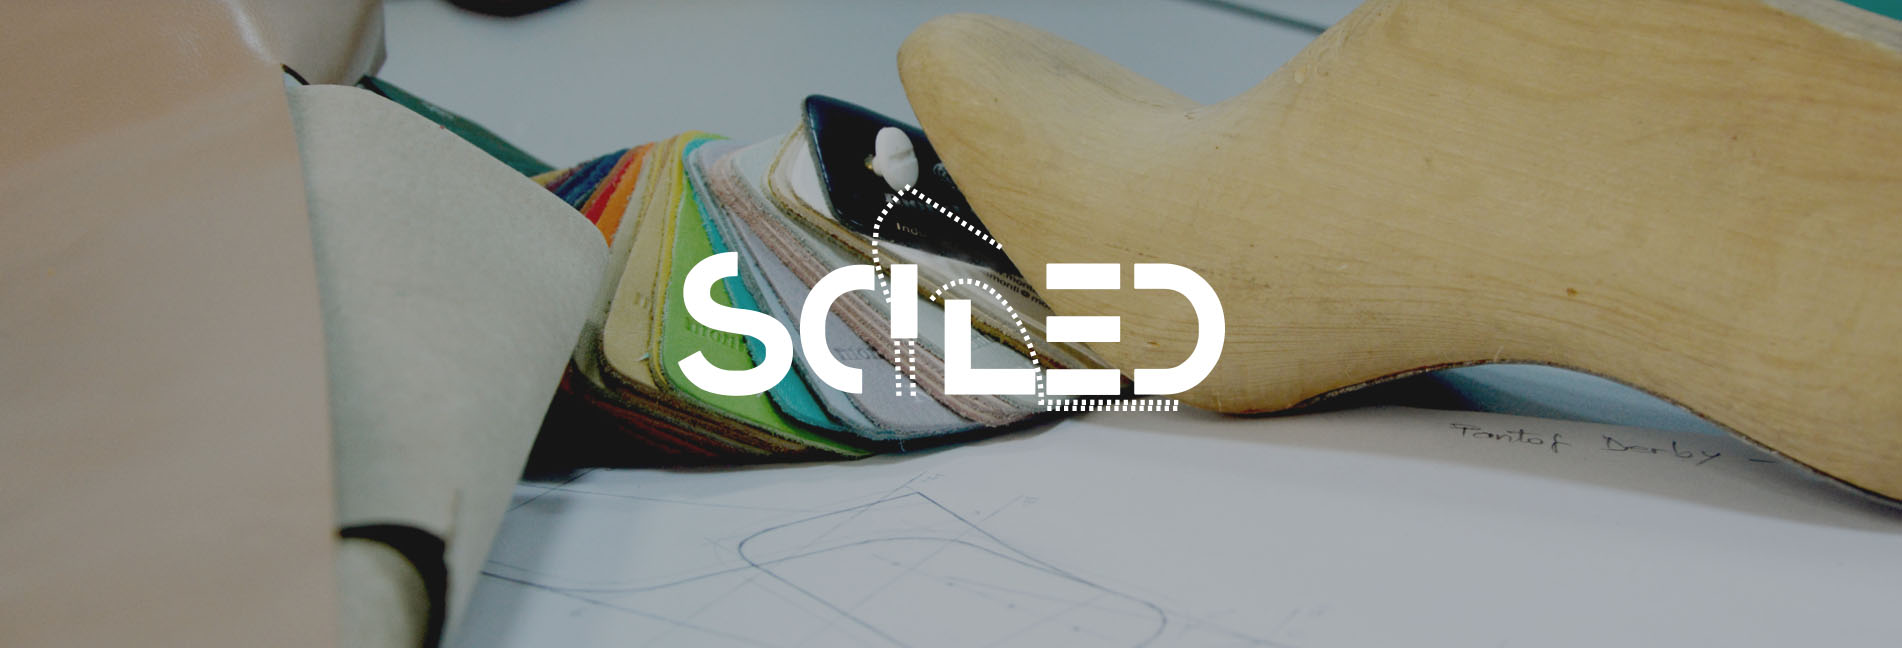 SCILED -Novas competêcias para o design de produtos de calçado de alta qualidade, sustentáveis